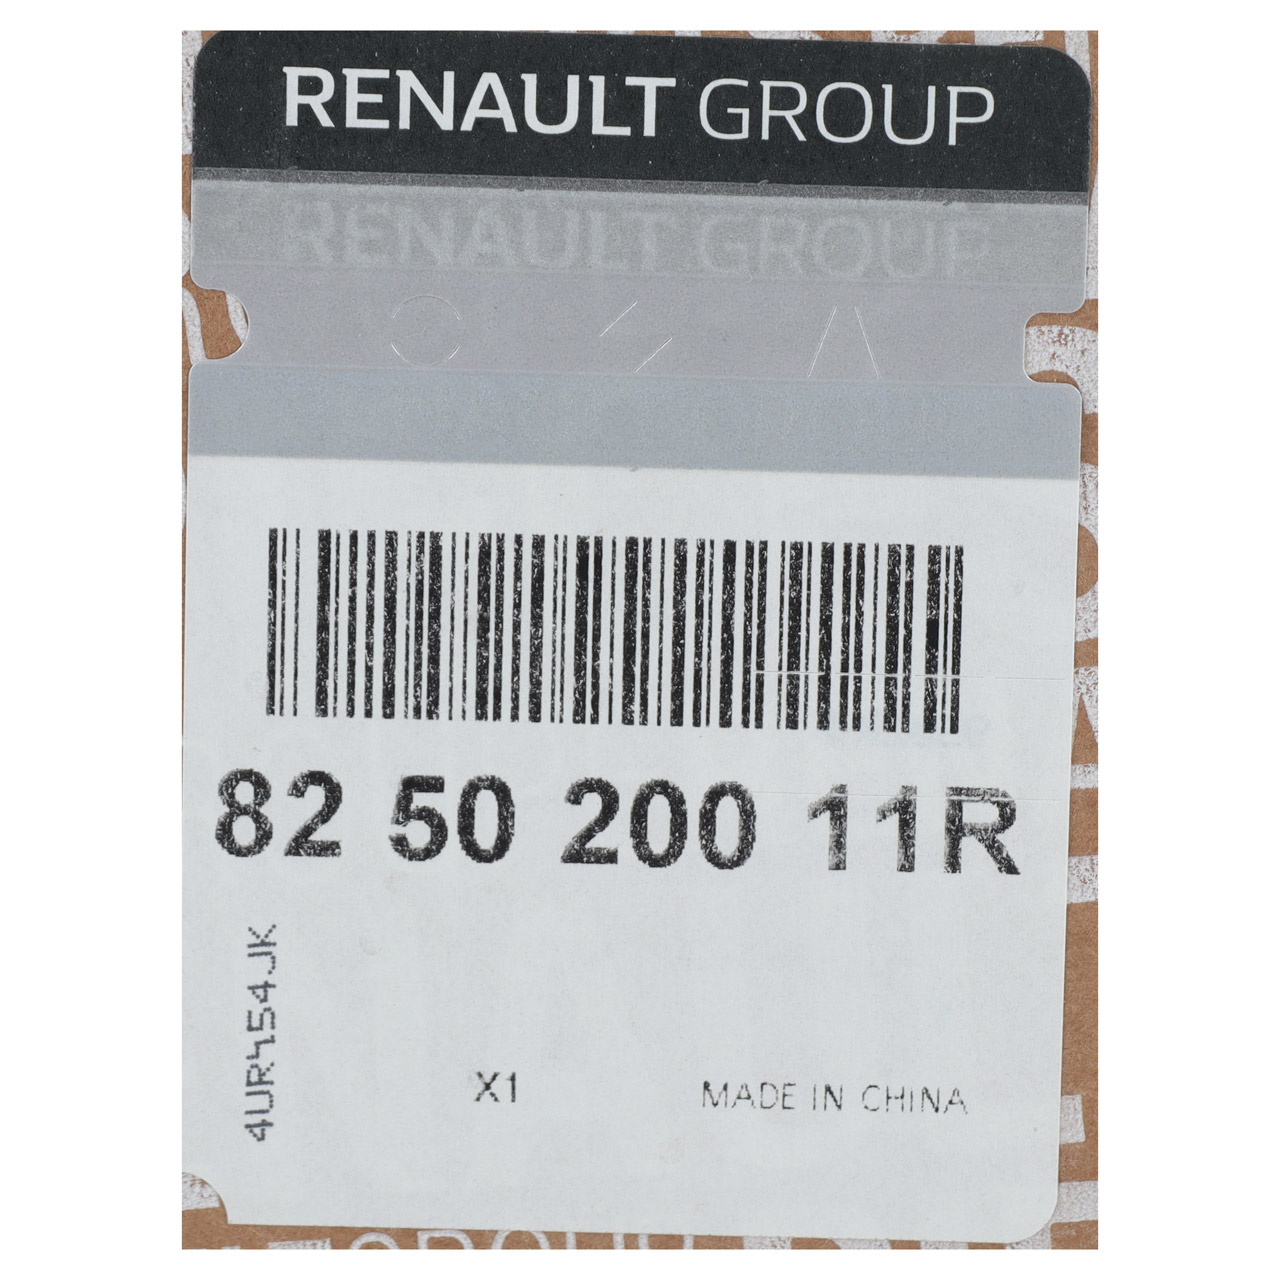 ORIGINAL Renault Türschloss Stellmotor Verriegelung Schiebetür Master 3 rechts 825020011R